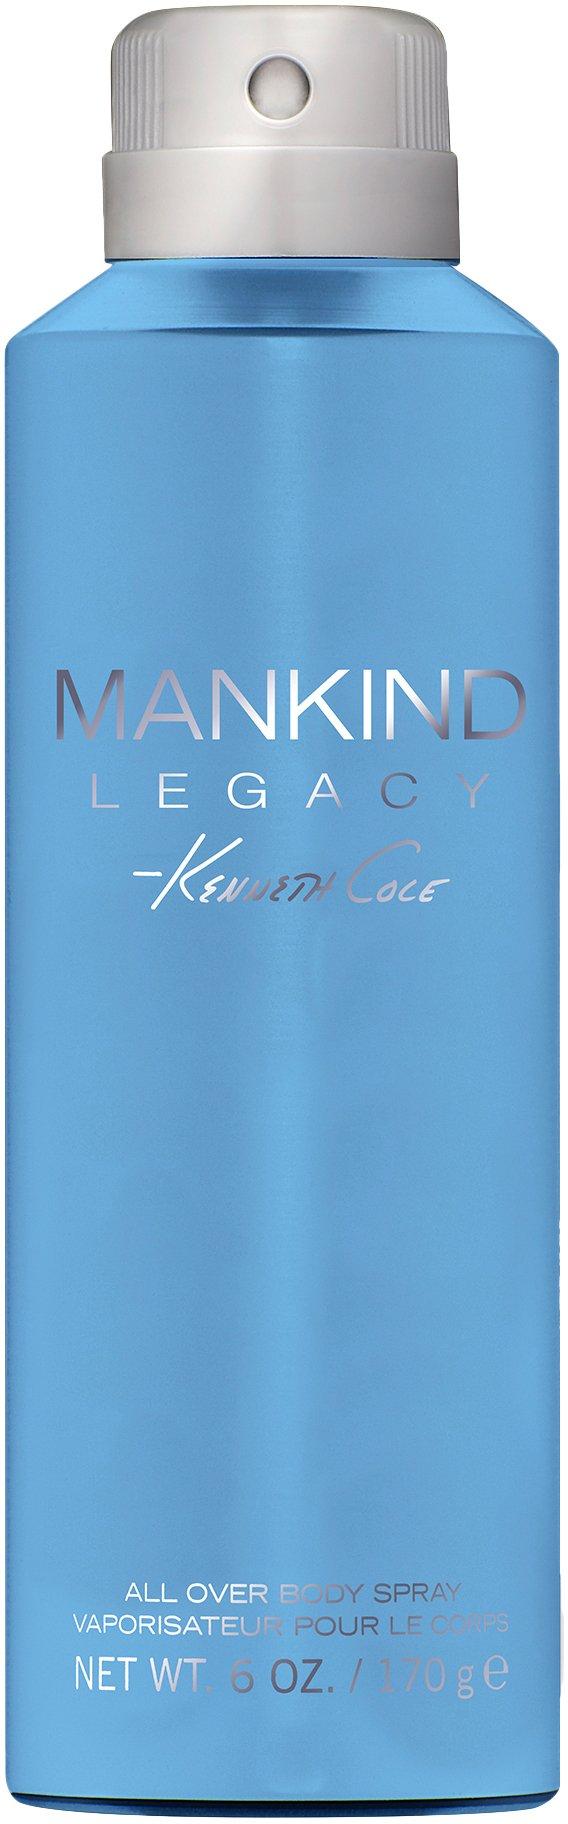 Kenneth Cole Mankind Legacy Mens 6 fl. oz. Body Spray